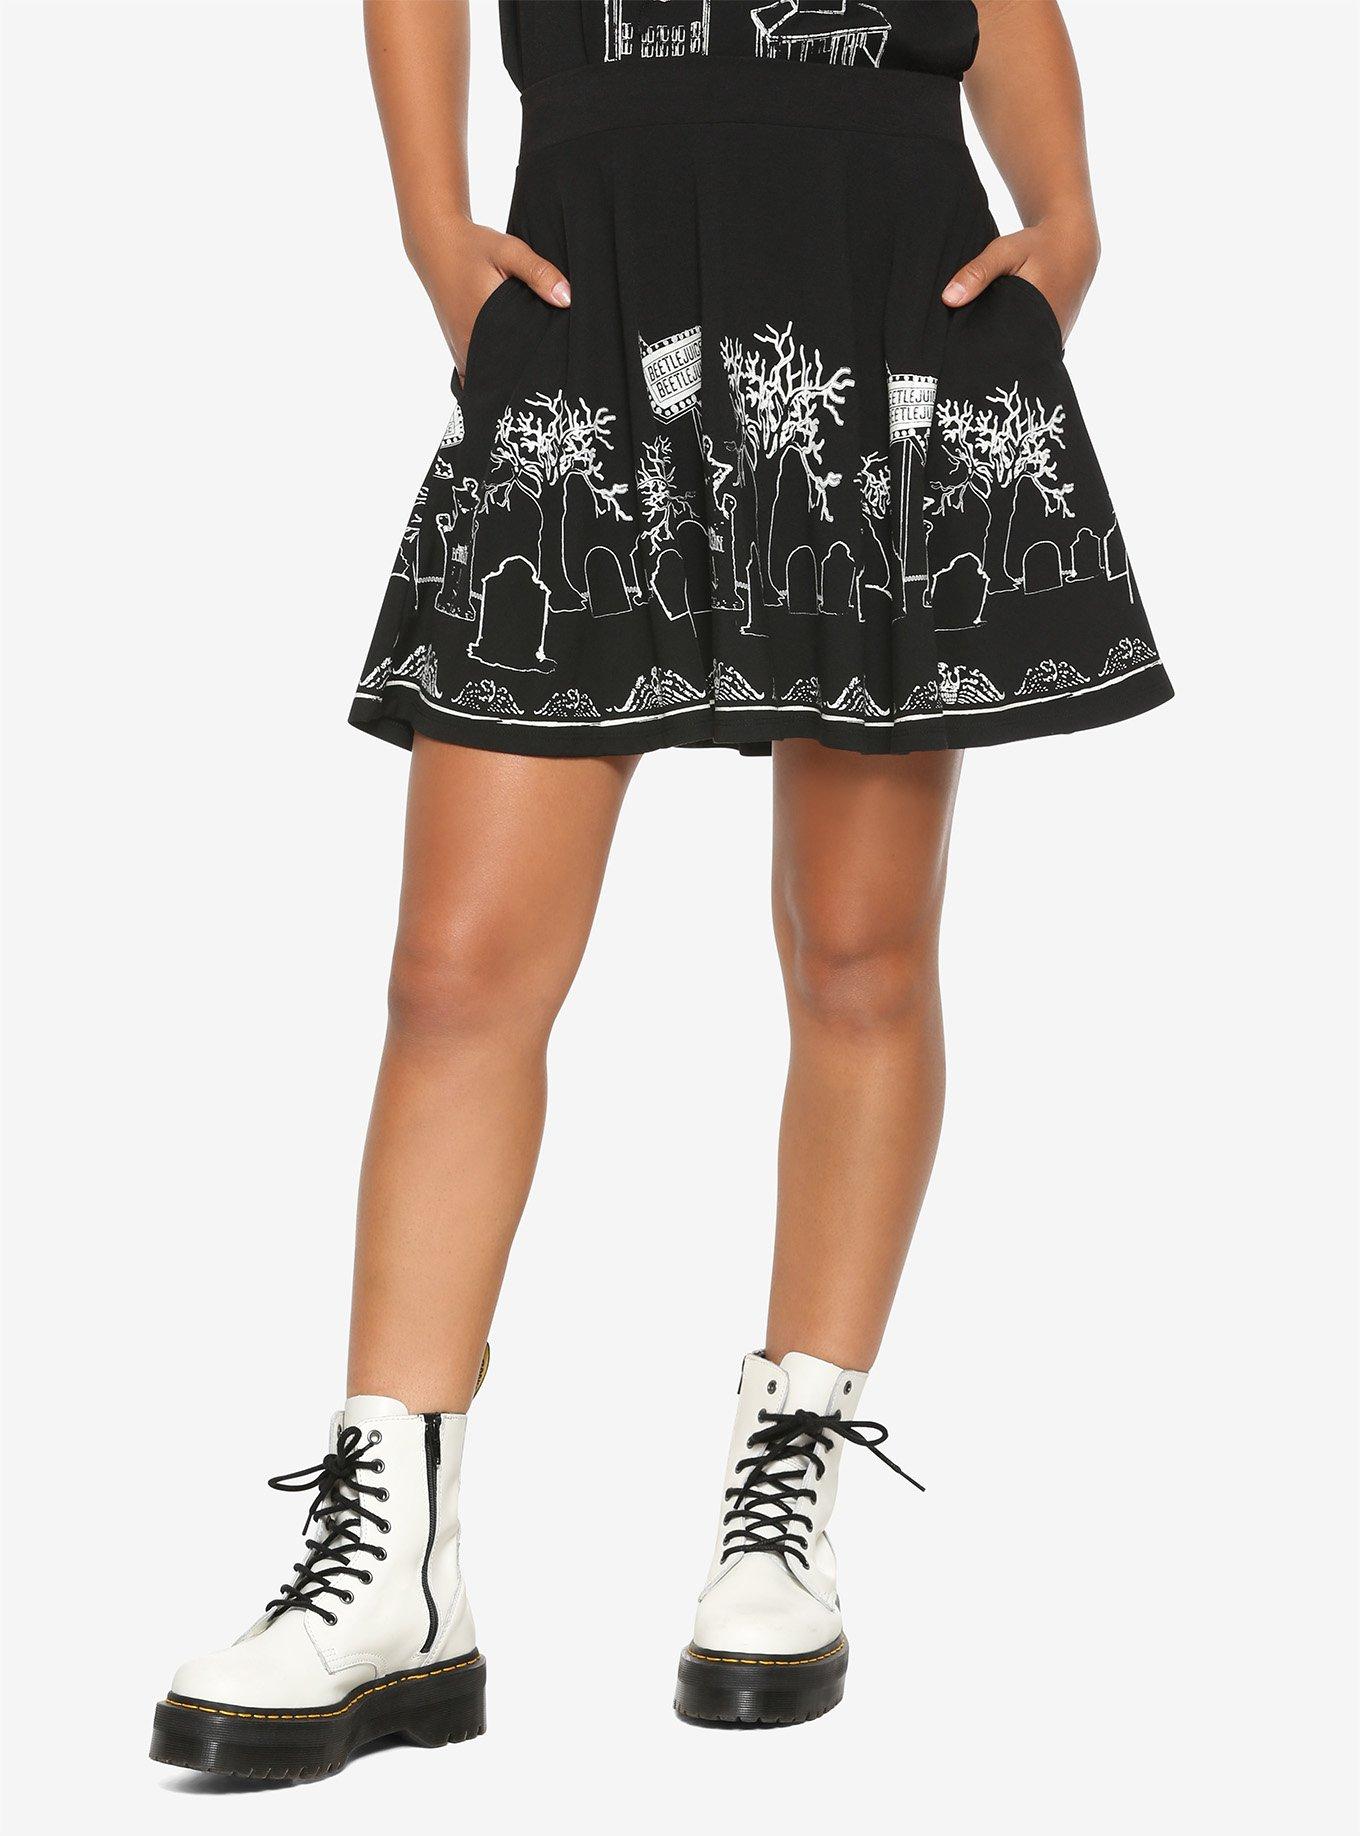 Beetlejuice Glow-In-The-Dark Graveyard Skater Skirt, BLACK, hi-res